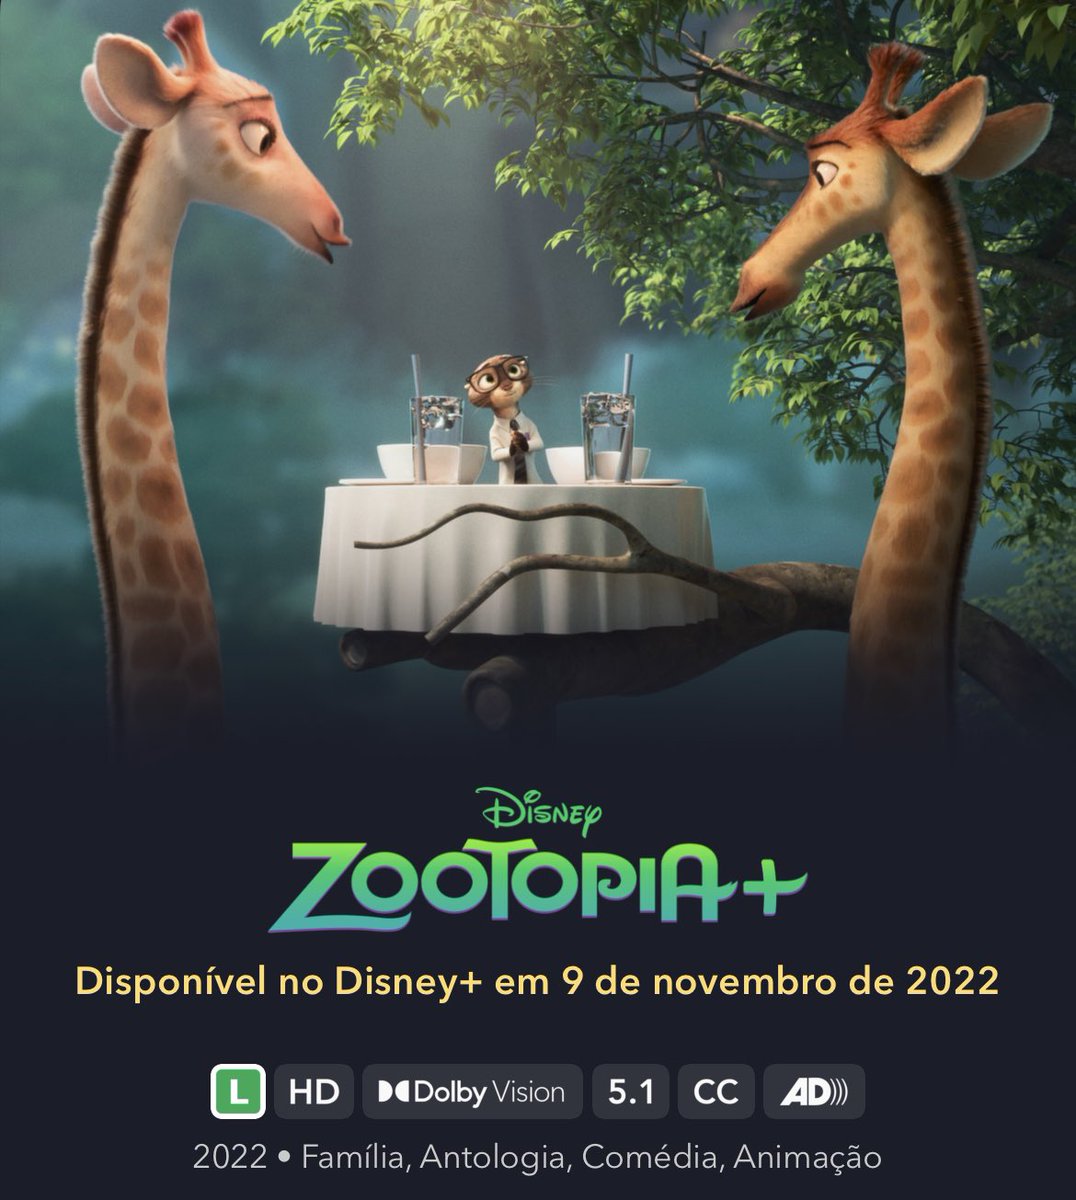 EXCLUSIVO: Vídeo mostra os personagens que foram cortados de 'Zootopia' -  CinePOP